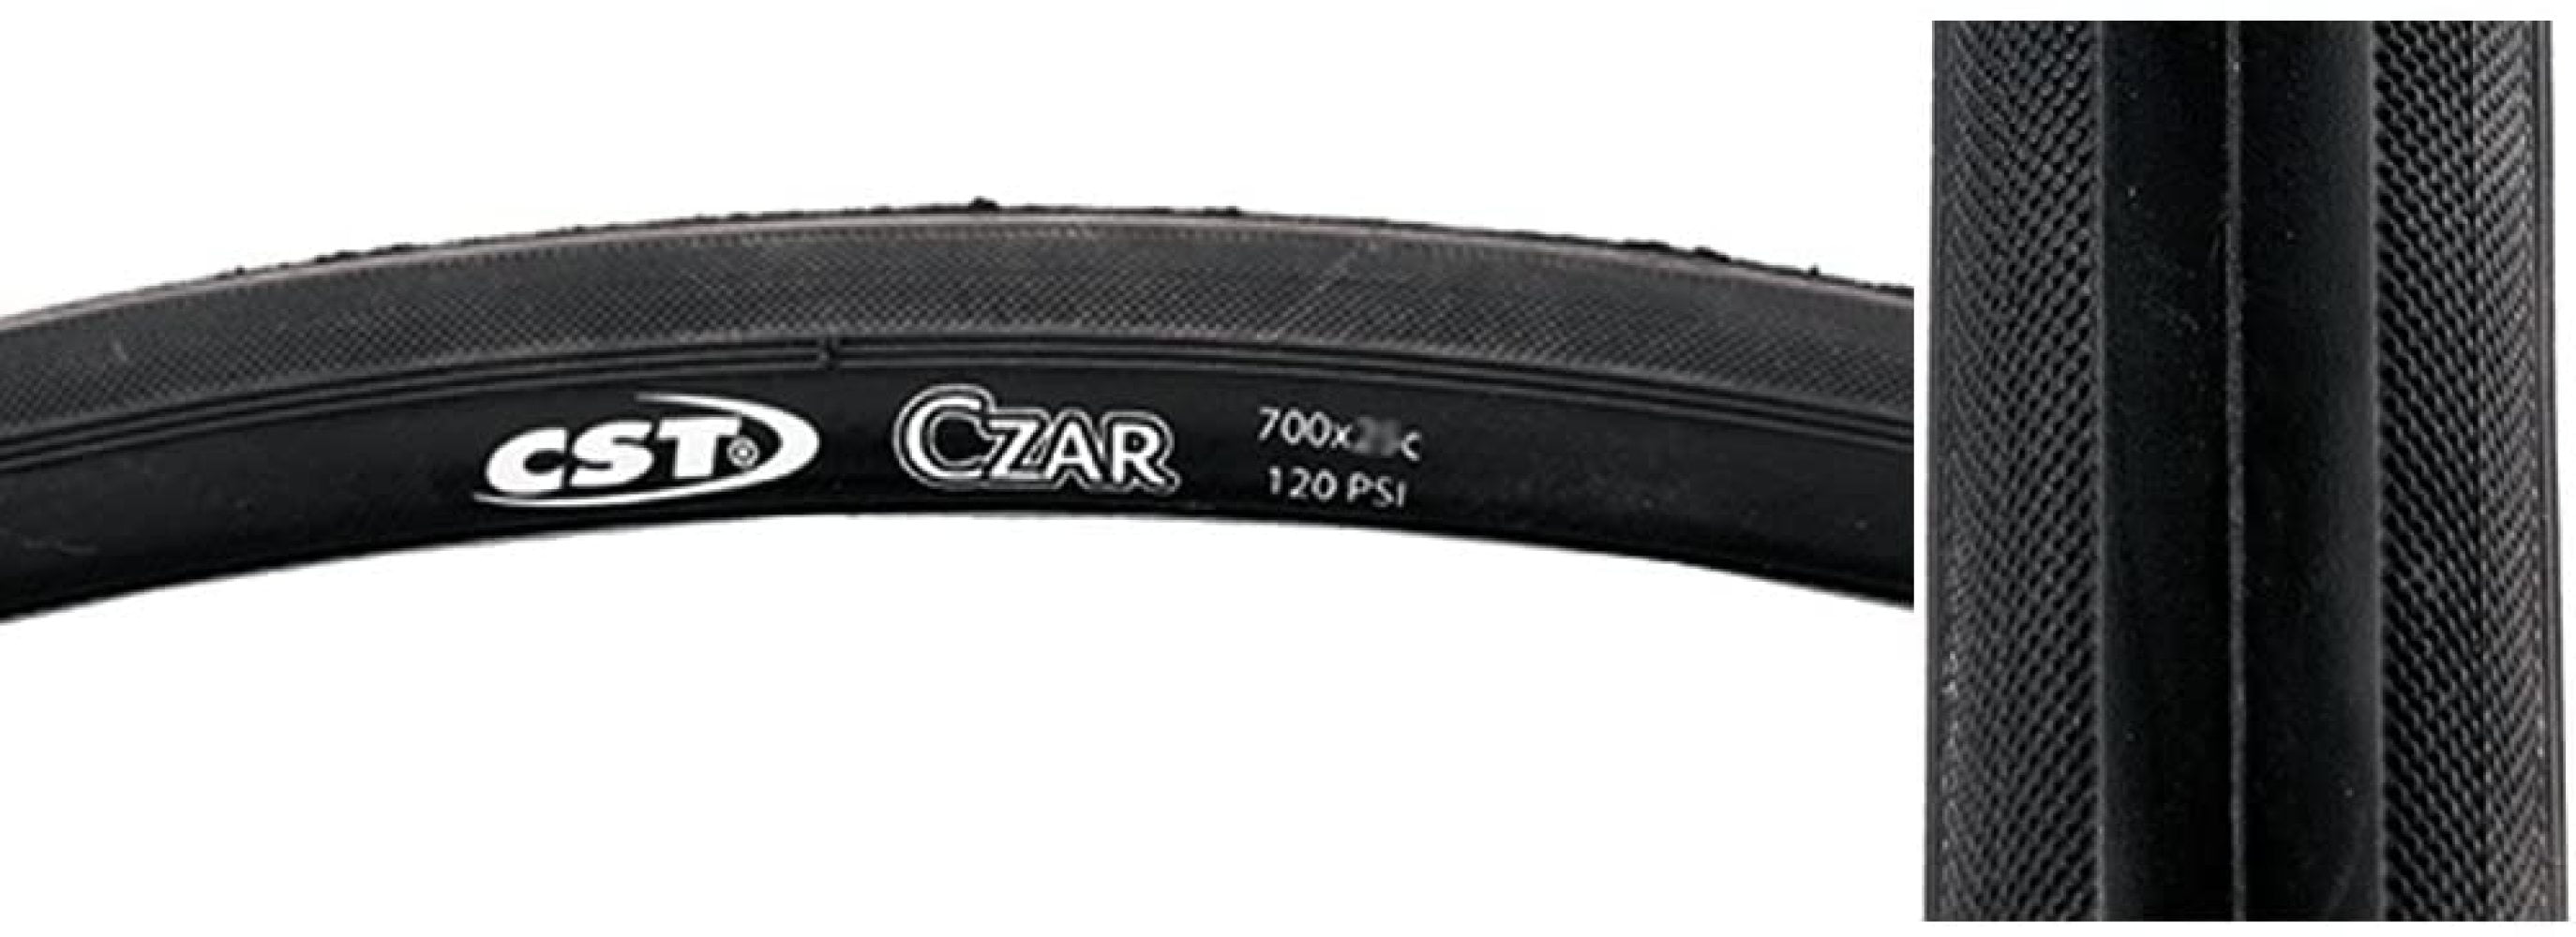 CST Czar Premium Road Bike Tire 700x23c 700 X 23 for sale online 